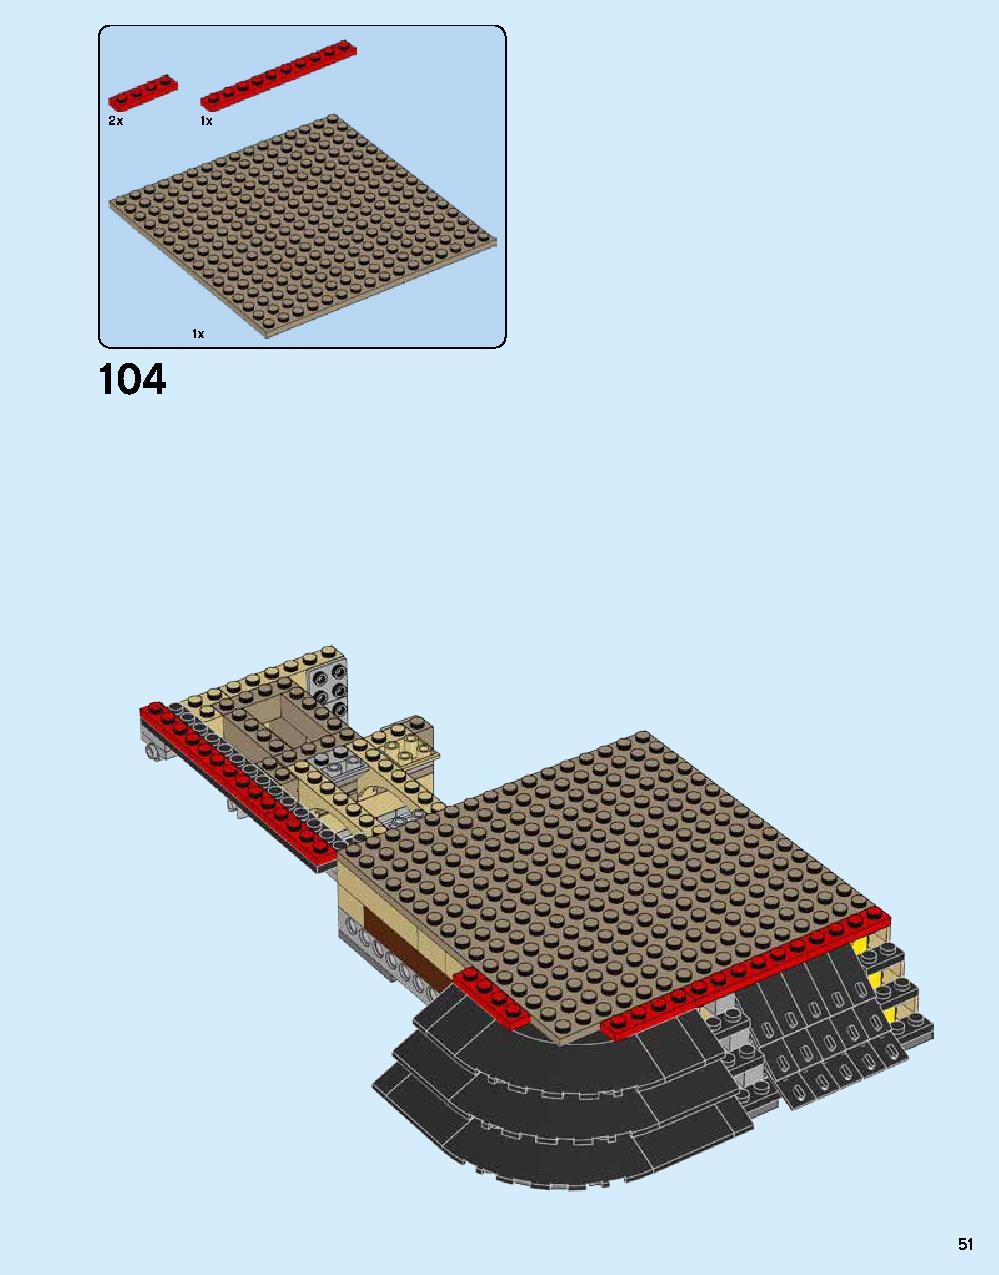 ニンジャゴー シティ 70620 レゴの商品情報 レゴの説明書・組立方法 51 page